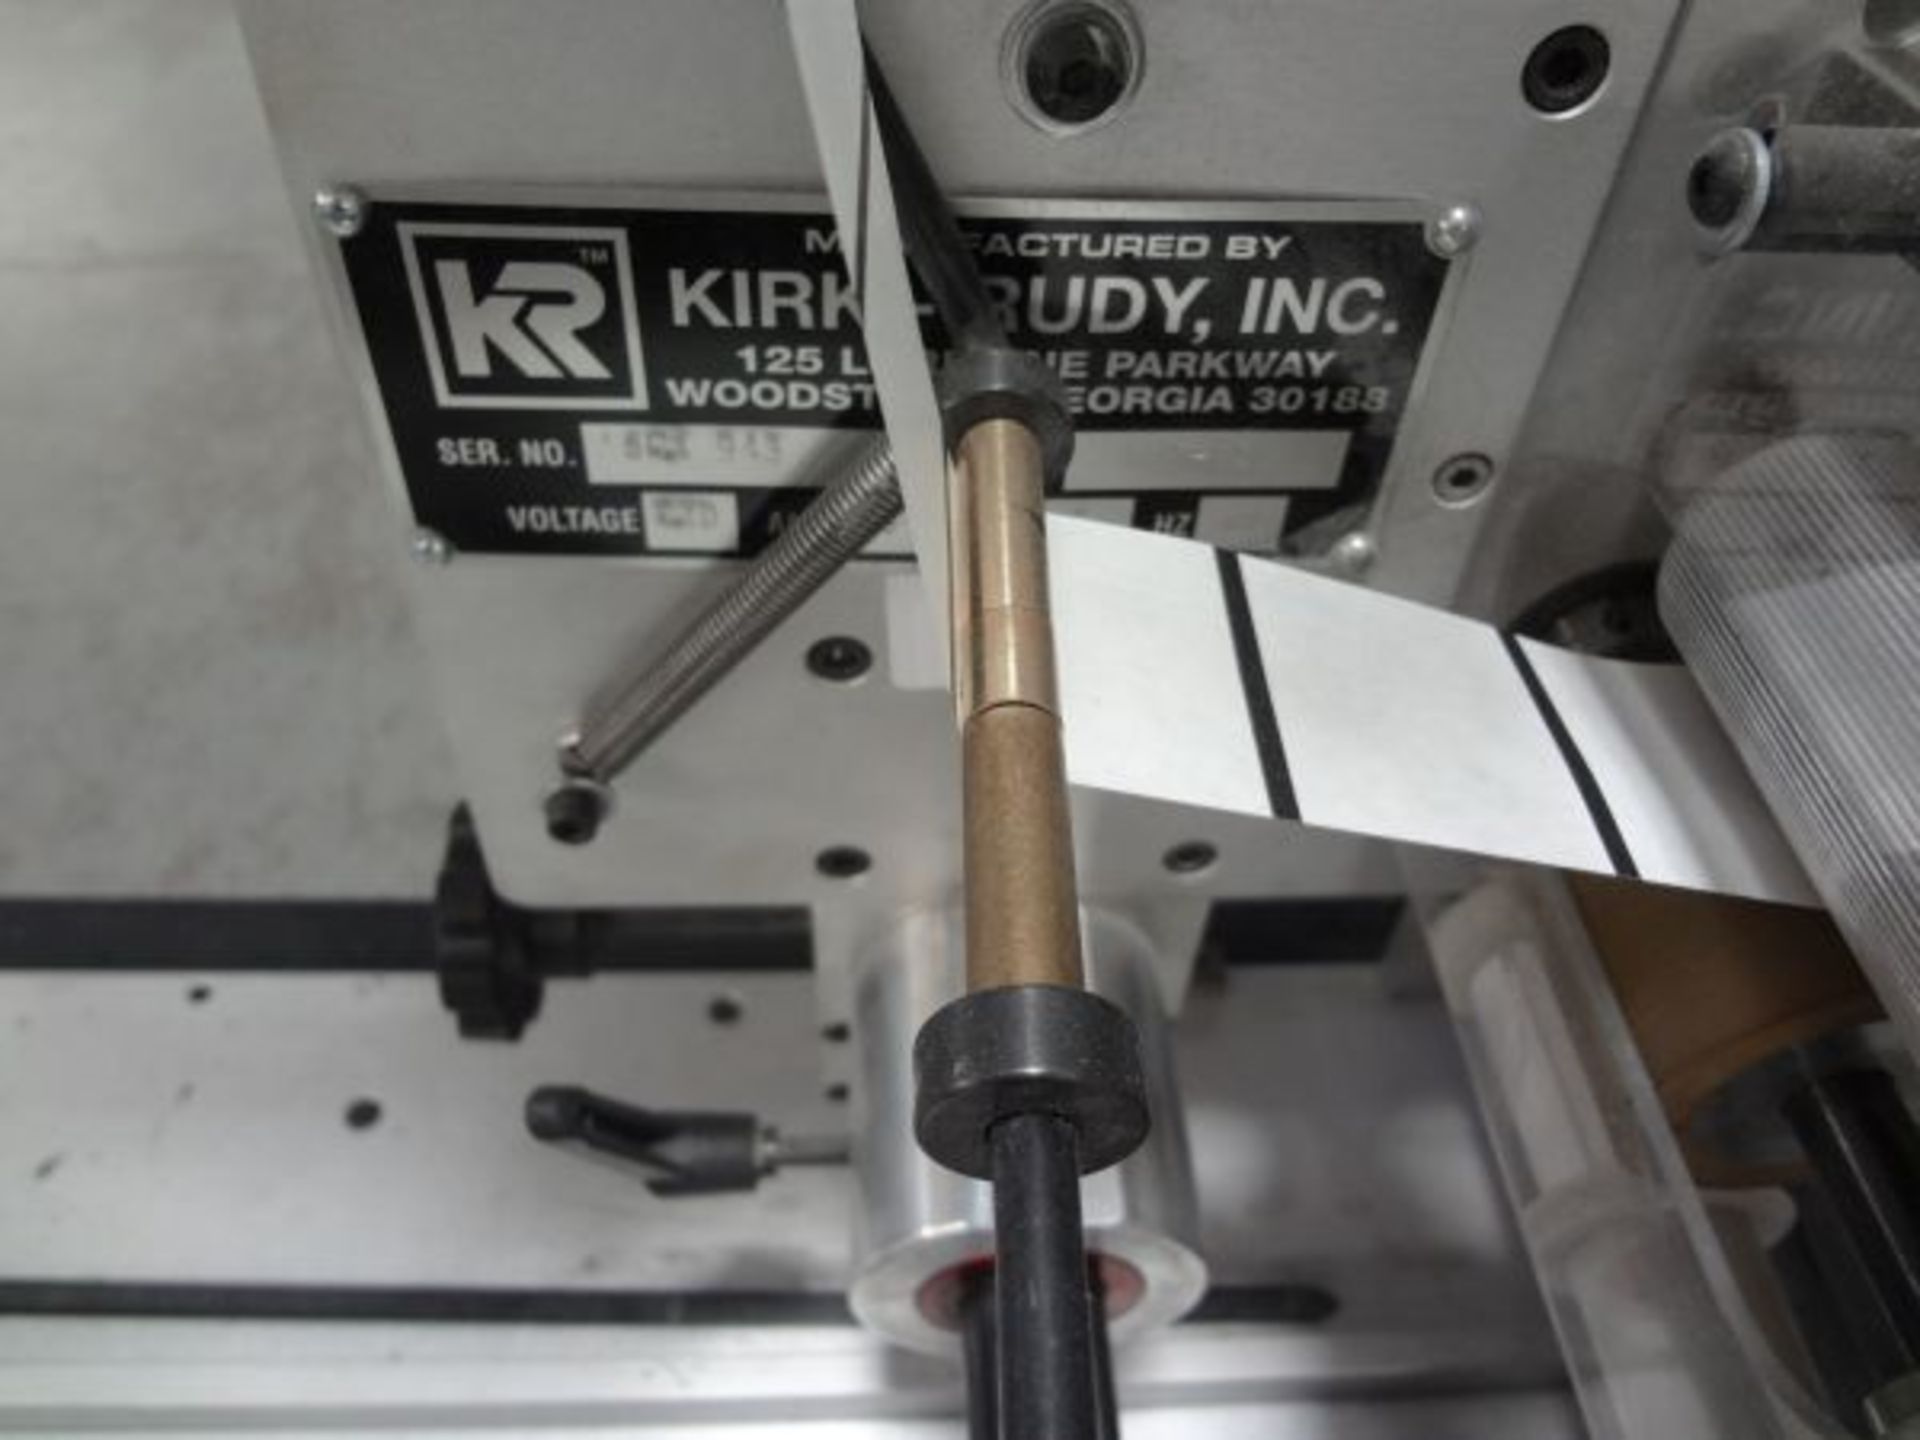 KIRK RUDY MODEL 535-CS TABBER; S/N 804943, WITH KIRK RUDY 415 BUMP TURN CONVEYOR AND 8' KIRK RUDY - Image 4 of 11